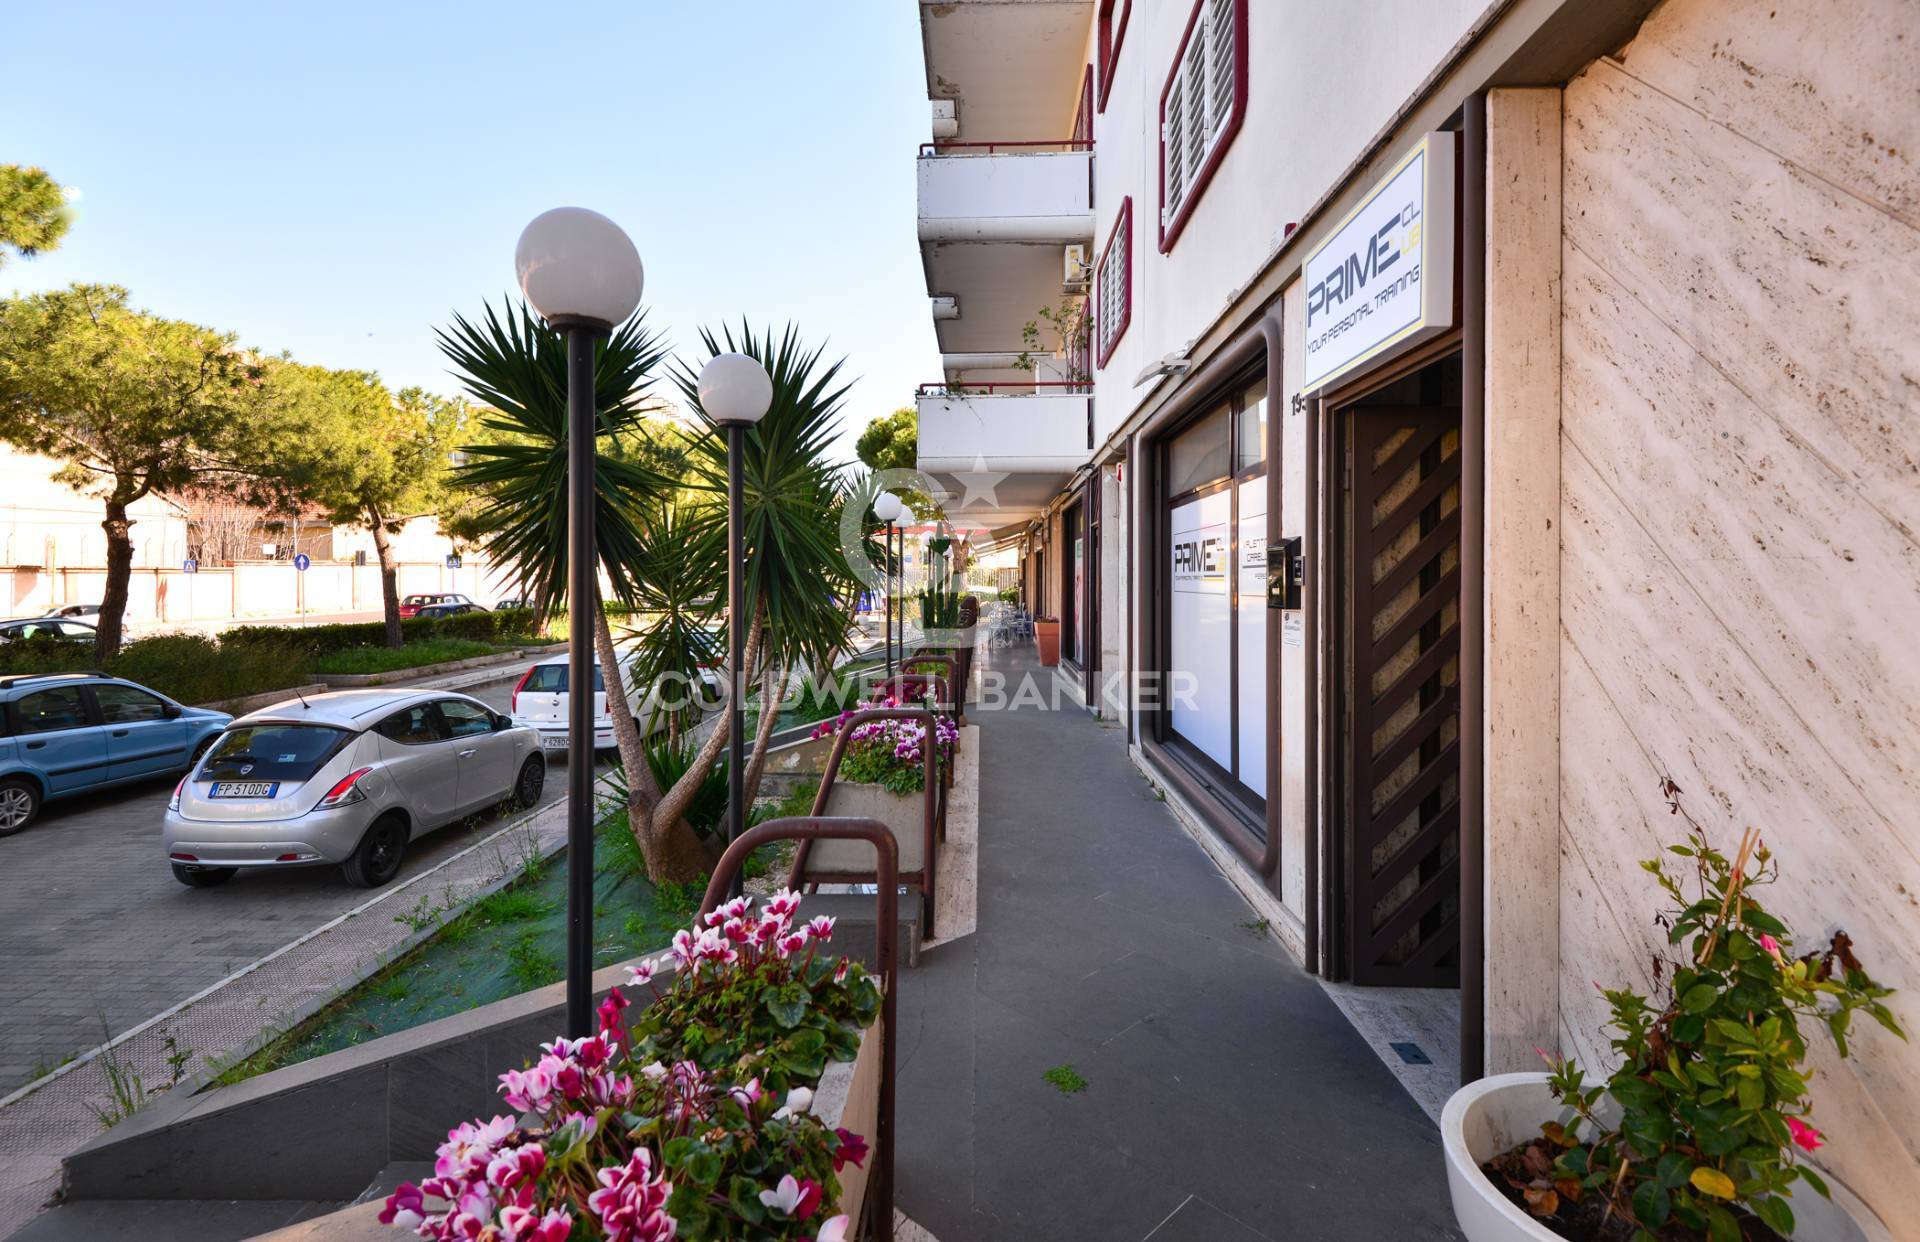 Locale commerciale in vendita a Bari - Zona: San Pasquale Alta